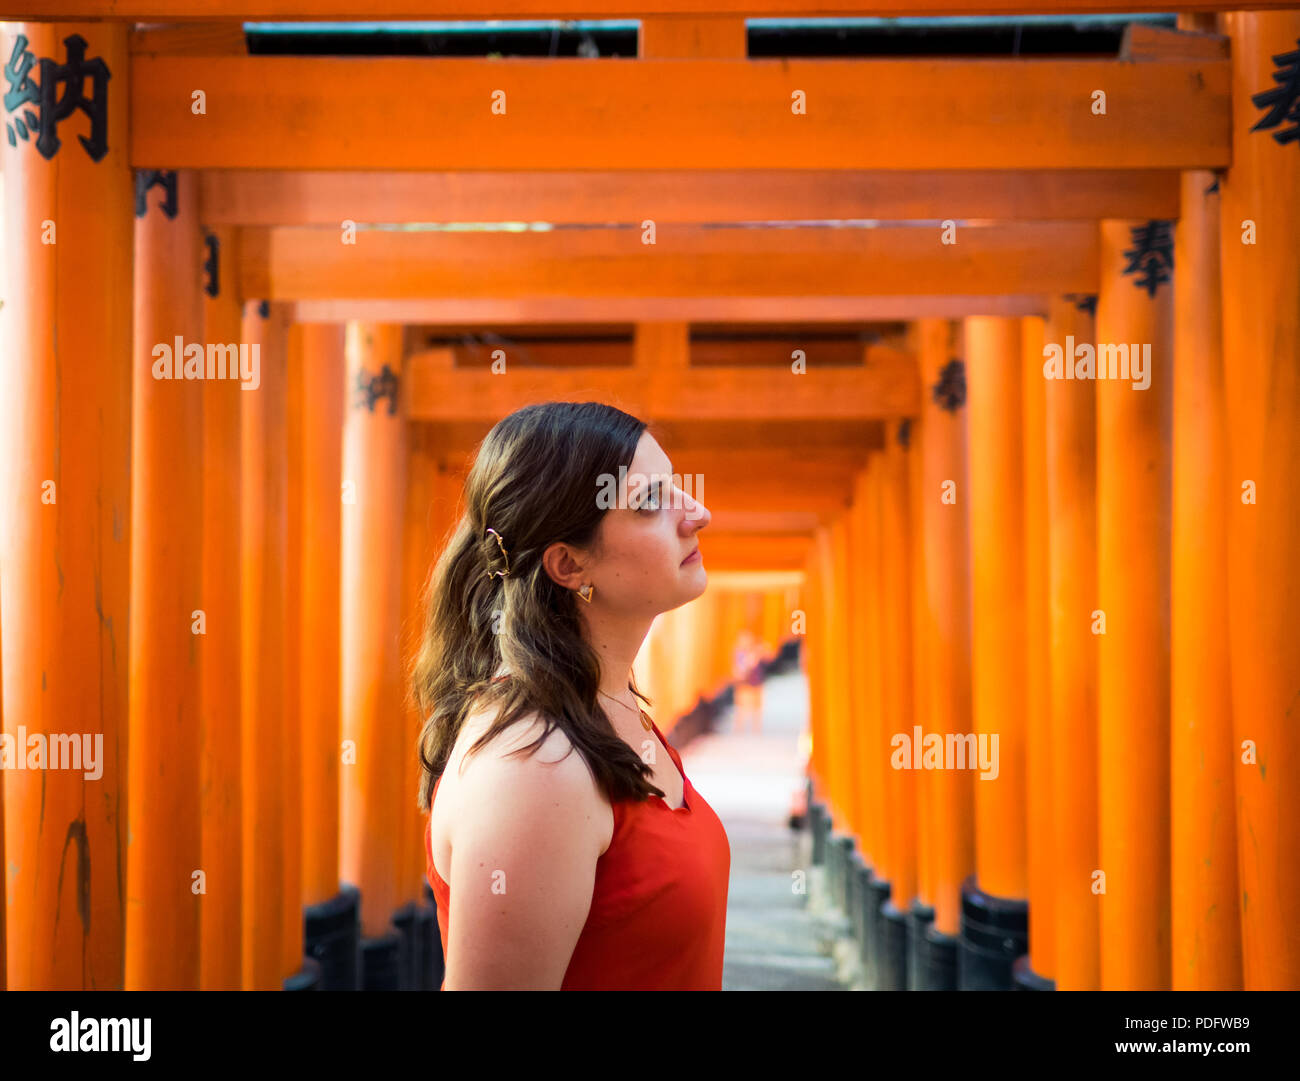 Une jolie fille brune au torii vermillon Fushimi Inari-Taisha de gates (Sanctuaire Fushimi Inari Taisha, sanctuaire Fushimi Inari) près de Kyoto, au Japon. Banque D'Images